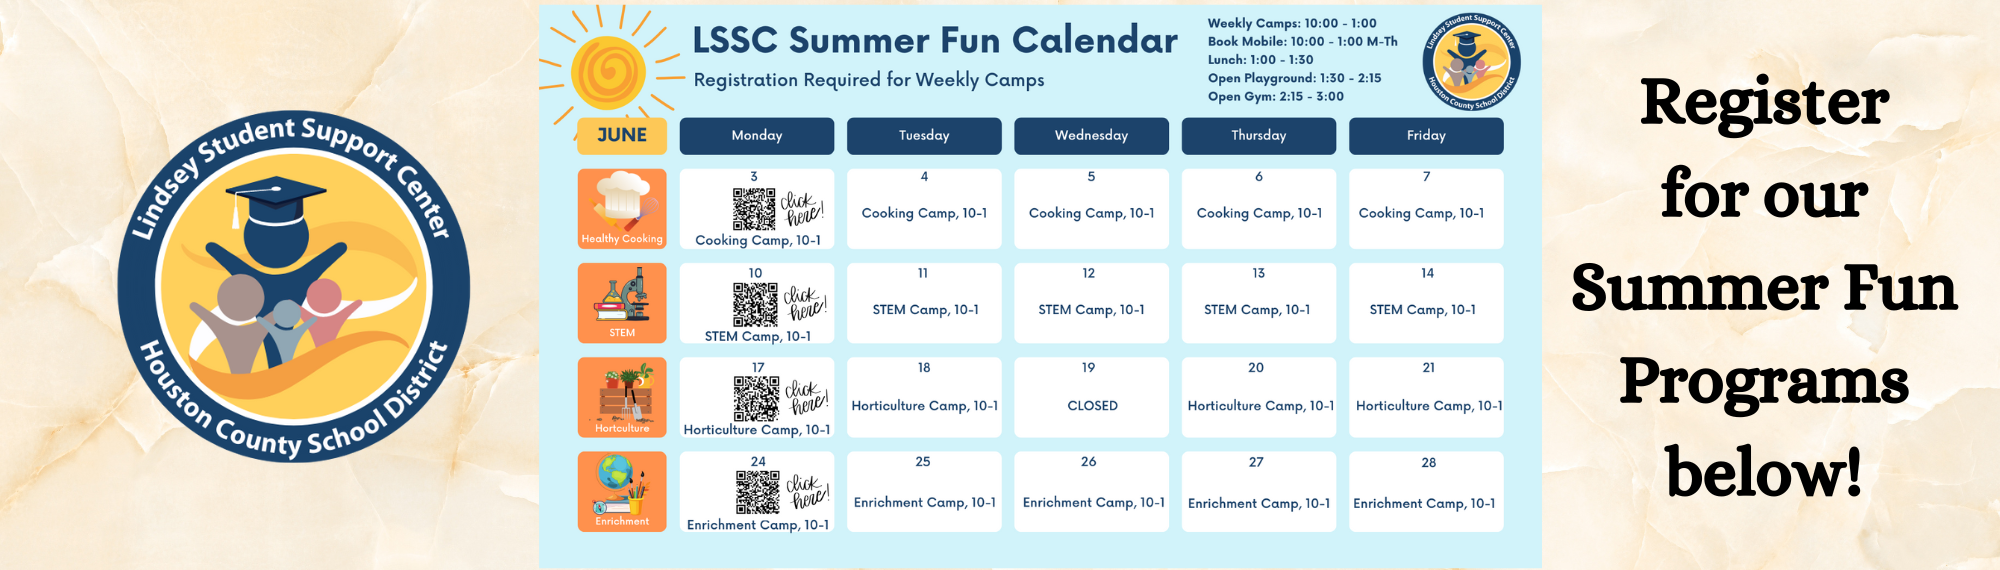 Summer Fun Programs